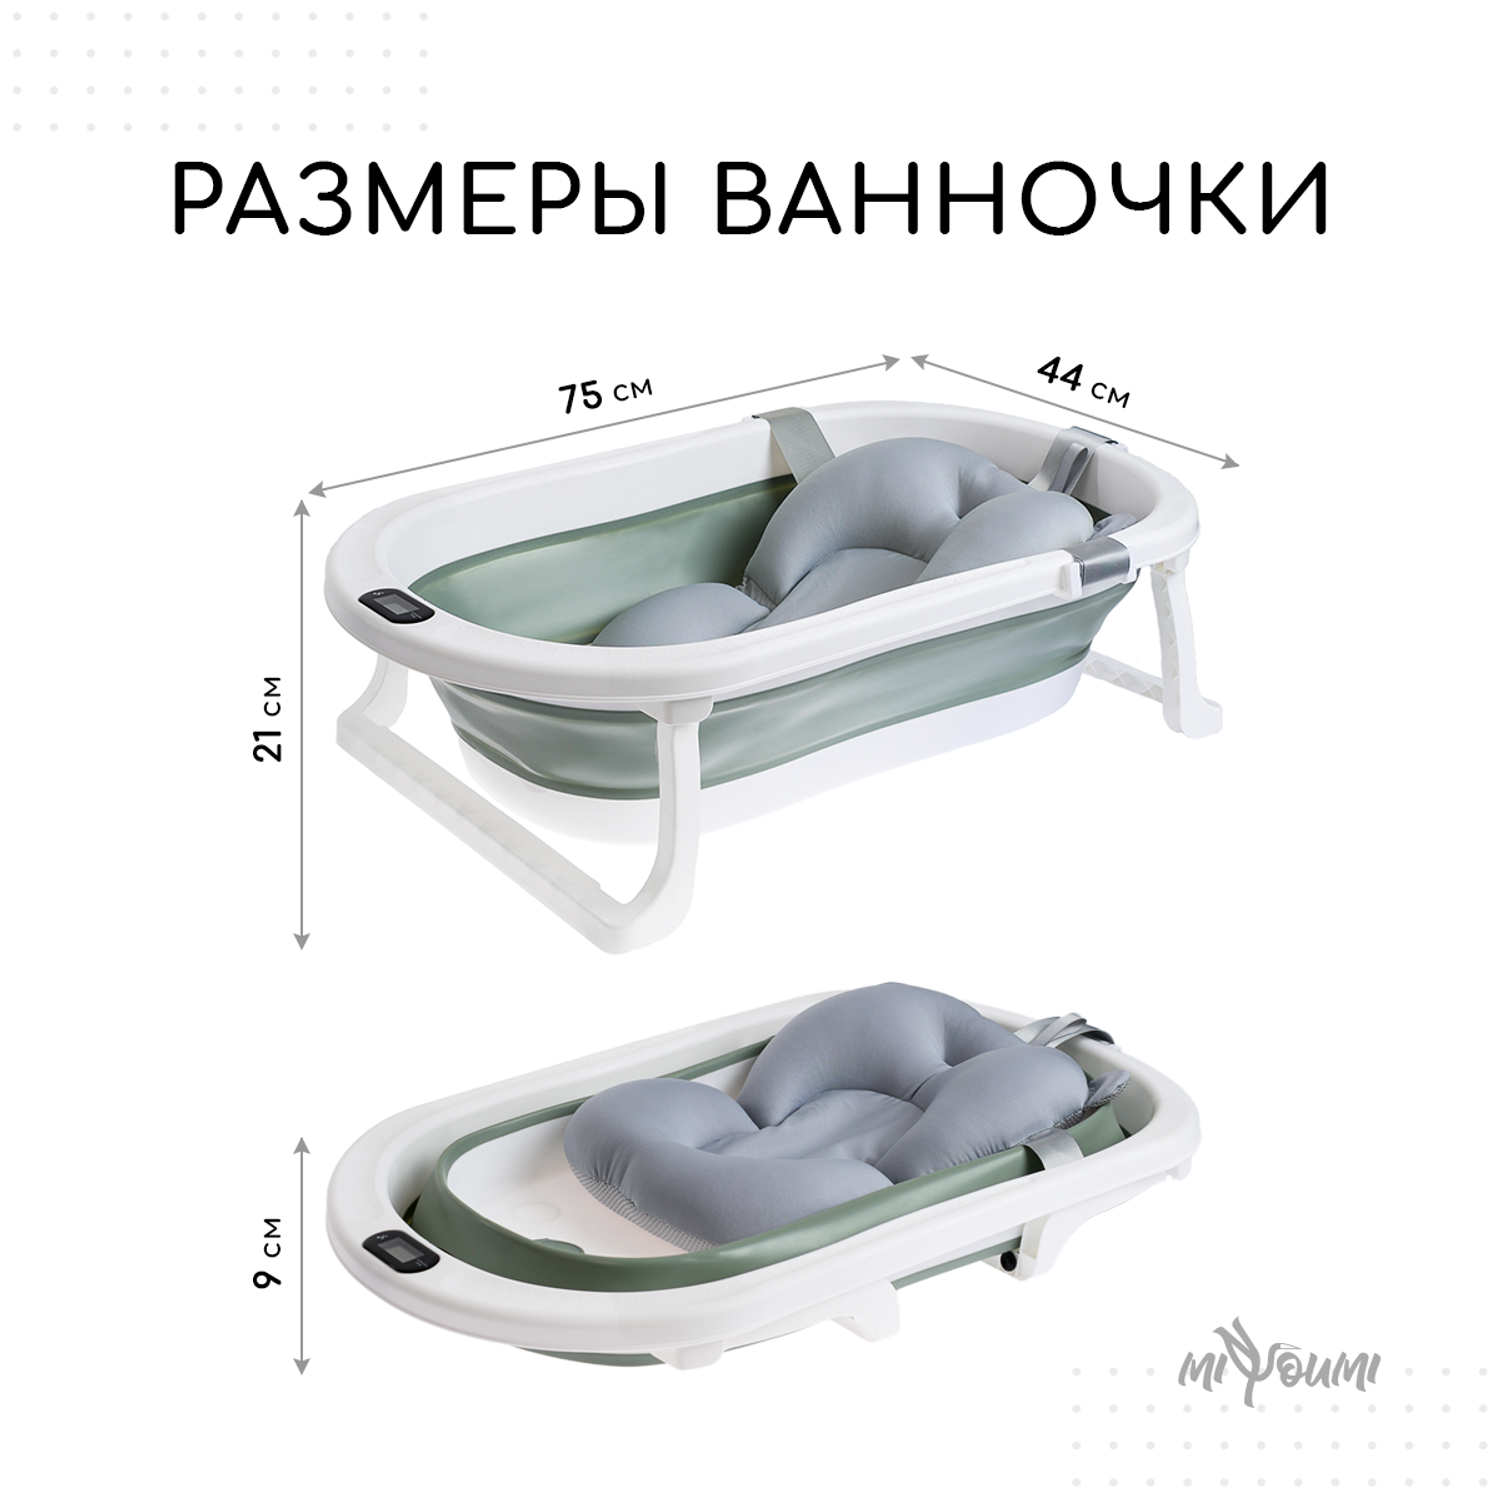 Ванночка для новорожденных Miyoumi с матрасиком и термометром складная - Sage - фото 10